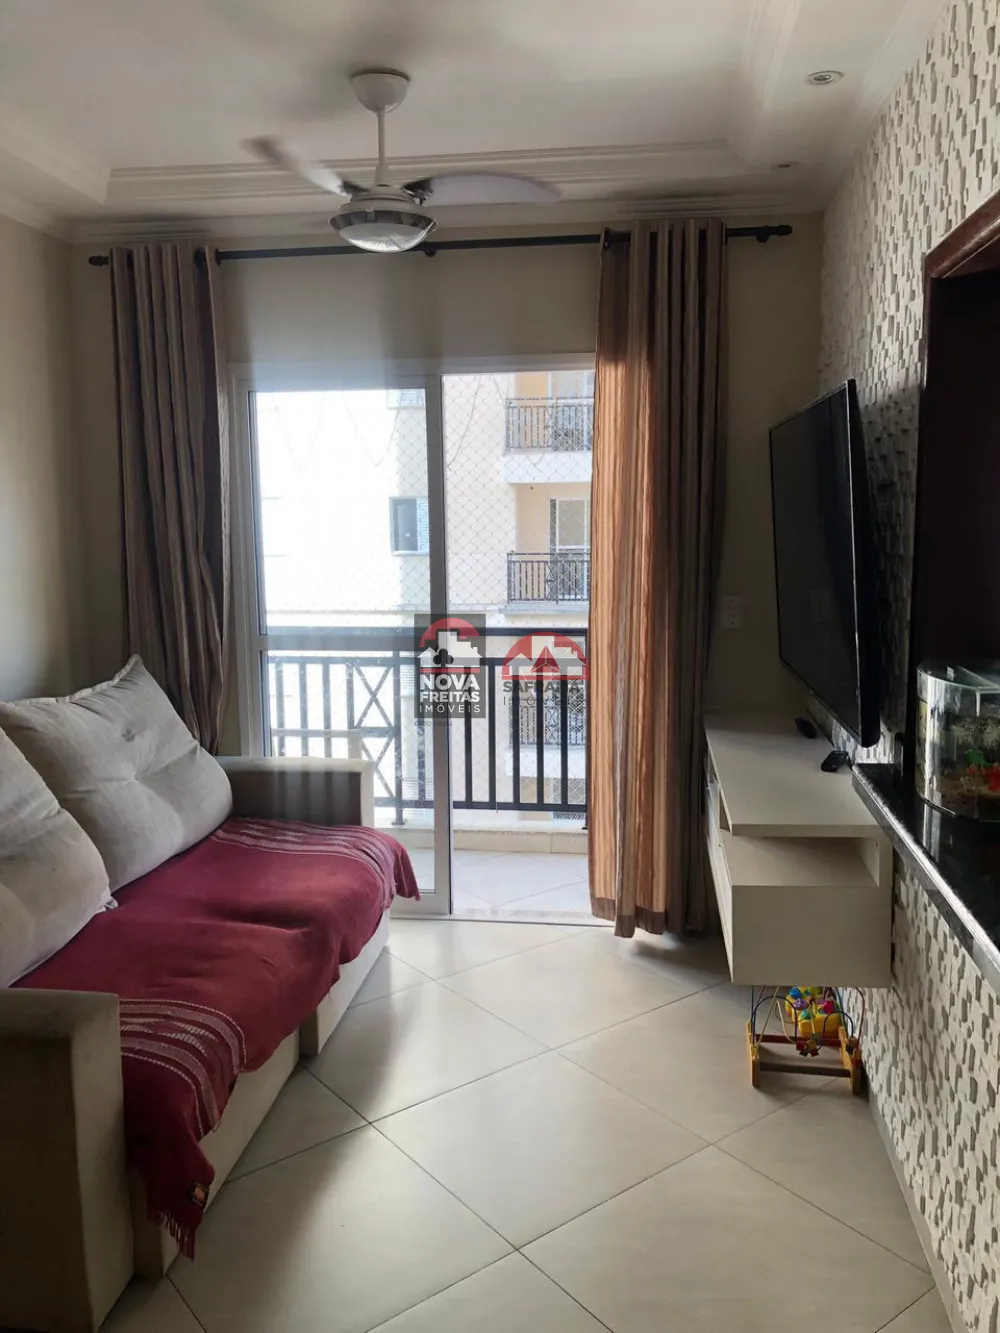 Apartamento / Padrão em Pindamonhangaba , Comprar por R$325.000,00